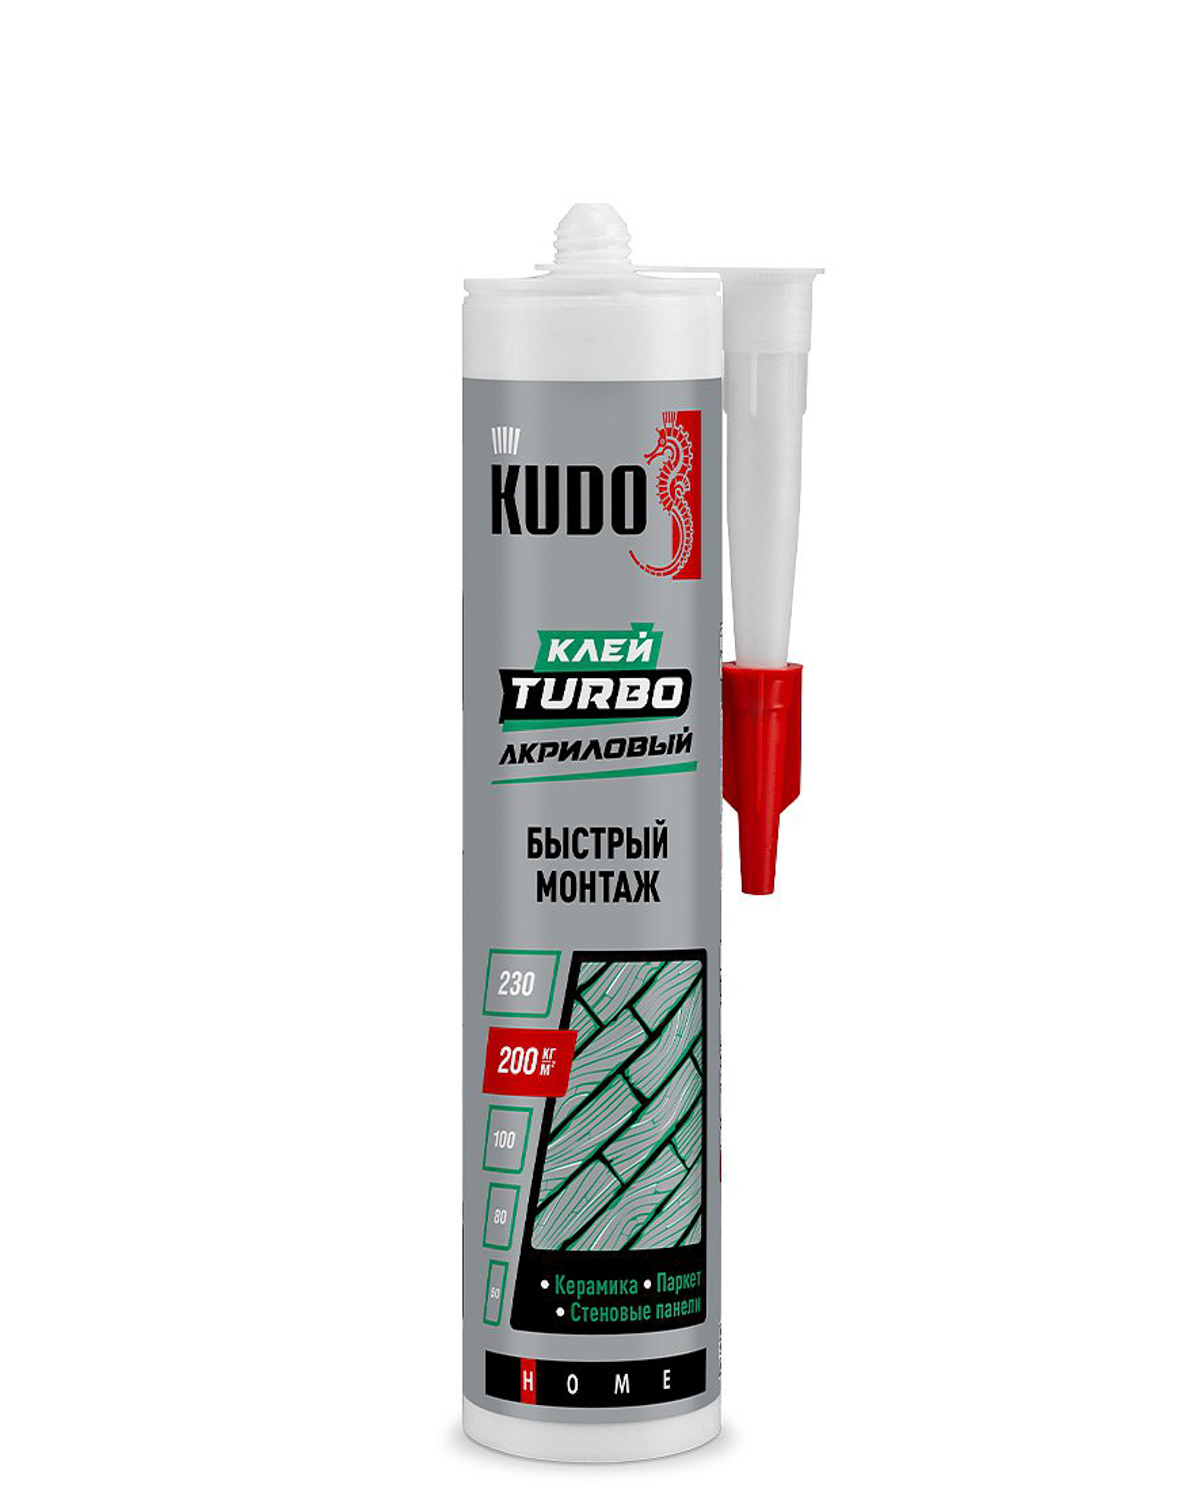 Клей Kudo Turbo для быстрого монтажа универсальный белый KBK-331 280 мл клей kudo